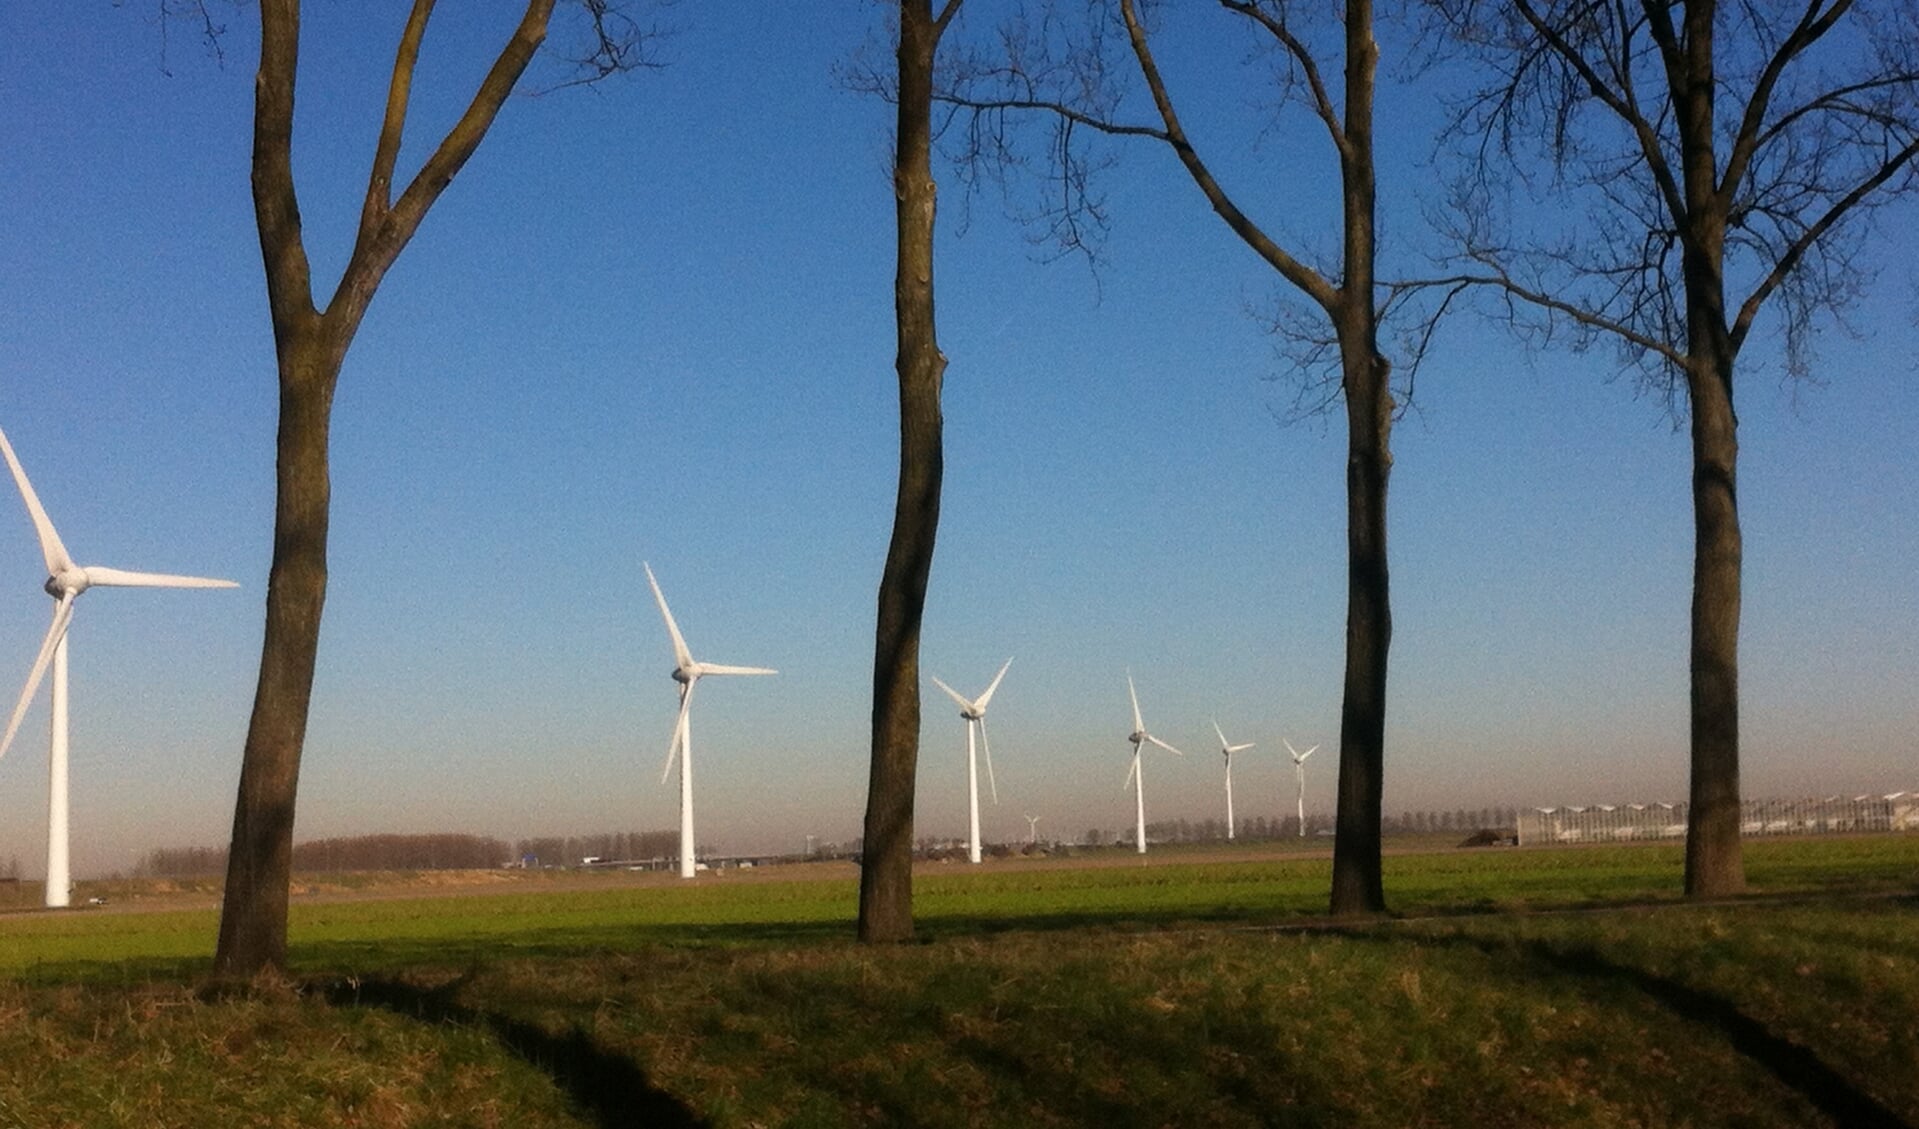 Bomen en windmolens tegen een strak blauwe lucht